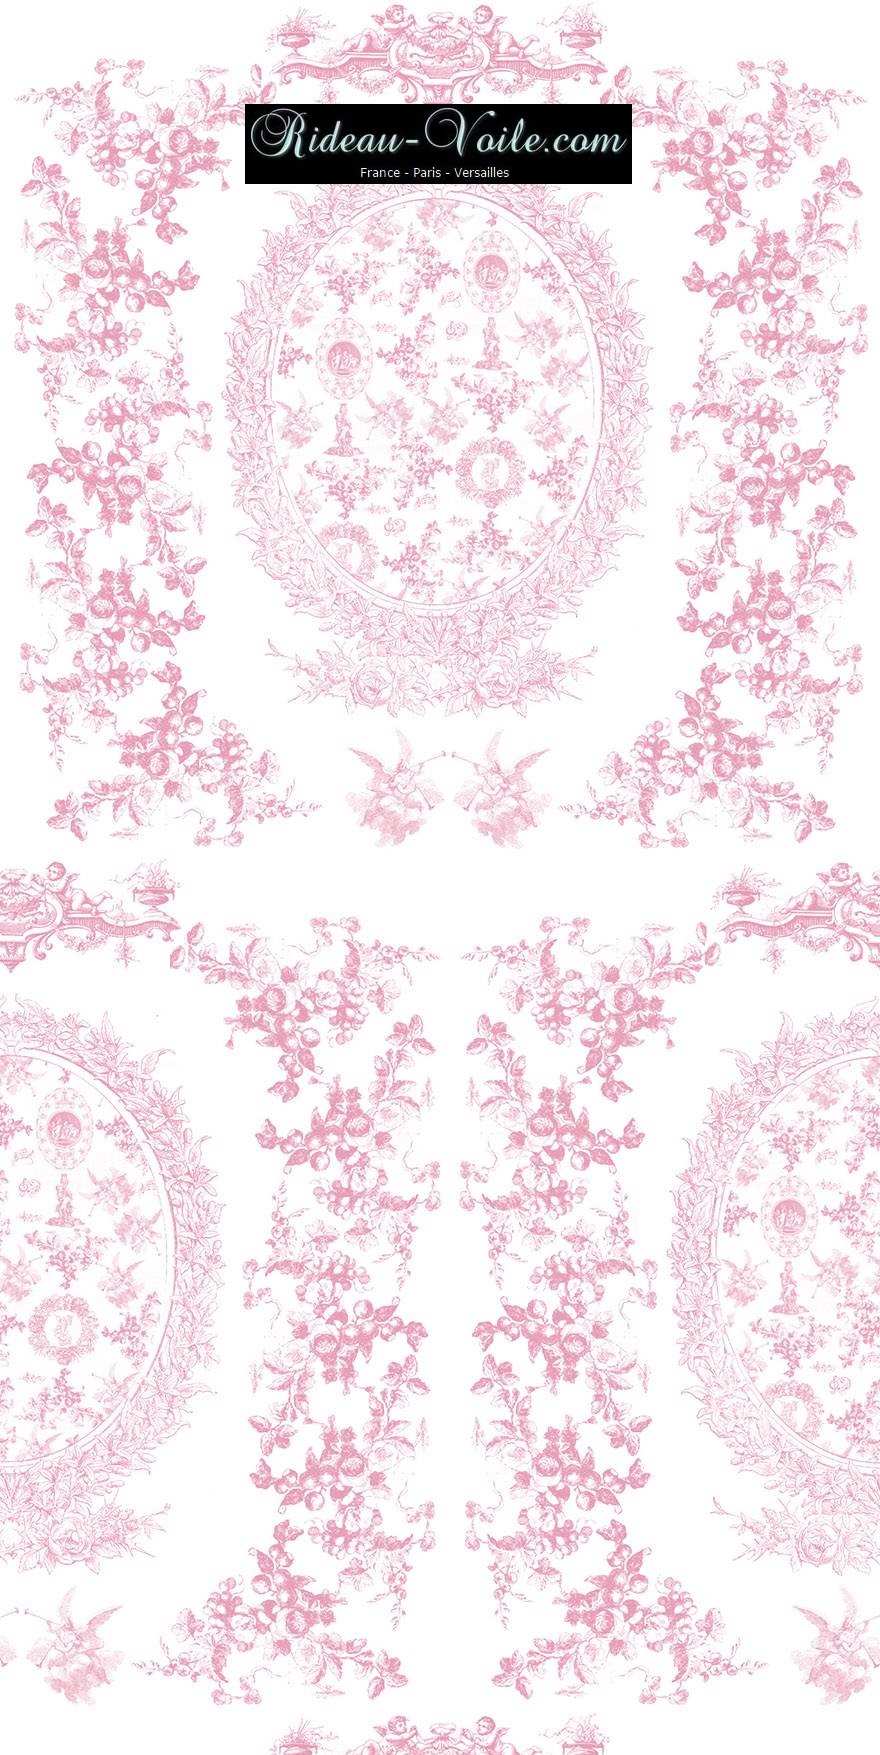 toile de jouy au mètre tissu rose pink  Toile ameublement tapisserie textile agencement Paris Versailles haut de gamme french fabric meter tapestry upholstery home pattern  style Empire Yvelines motif imprimé